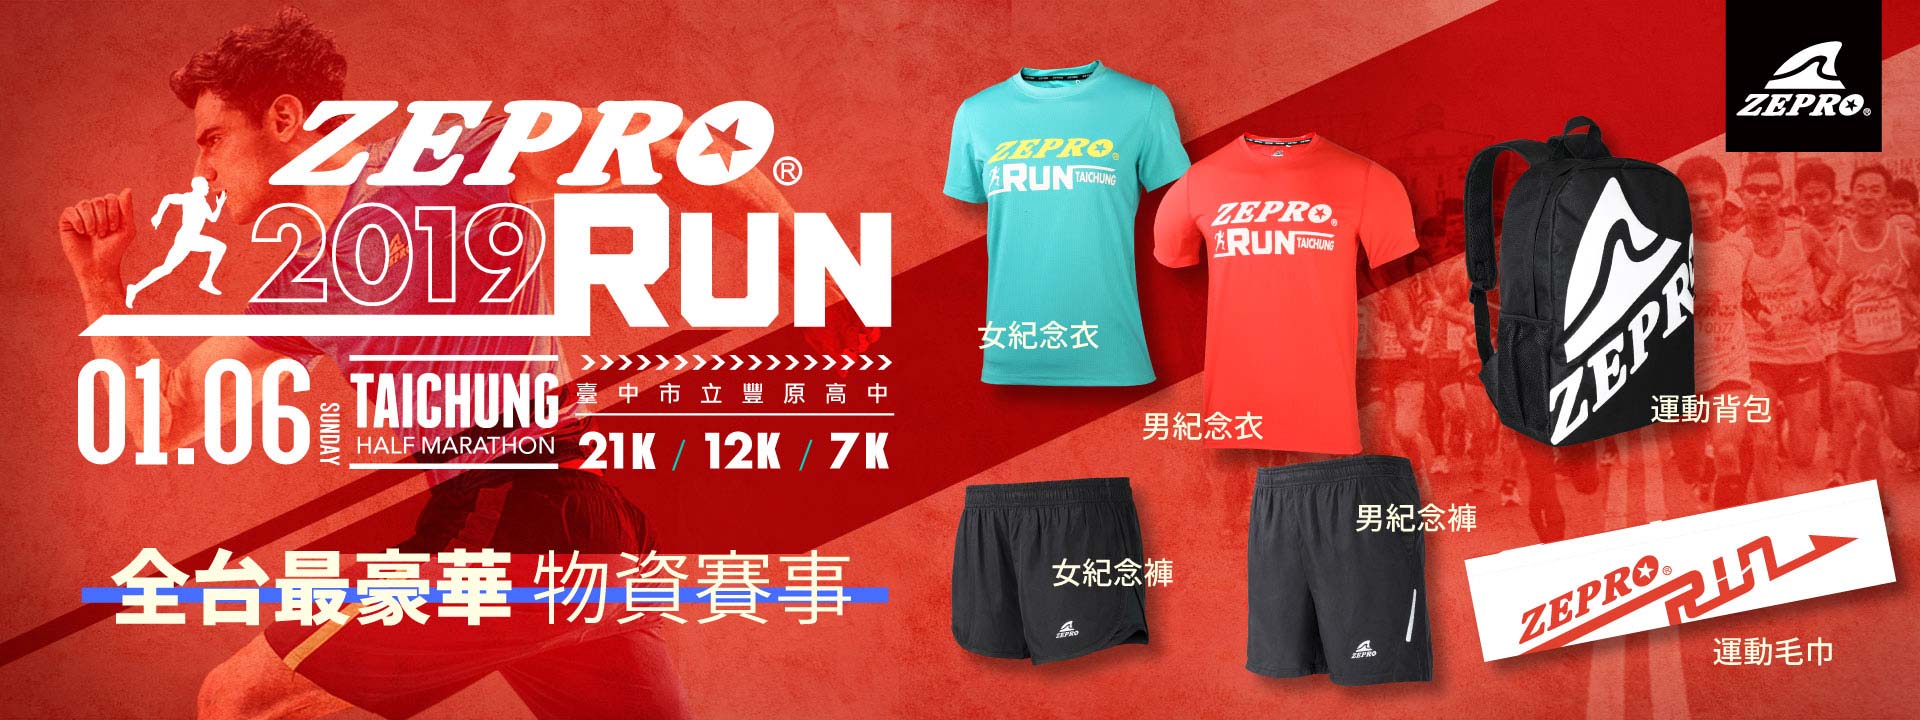 2019 台中 ZEPRO RUN 全國半程馬拉松